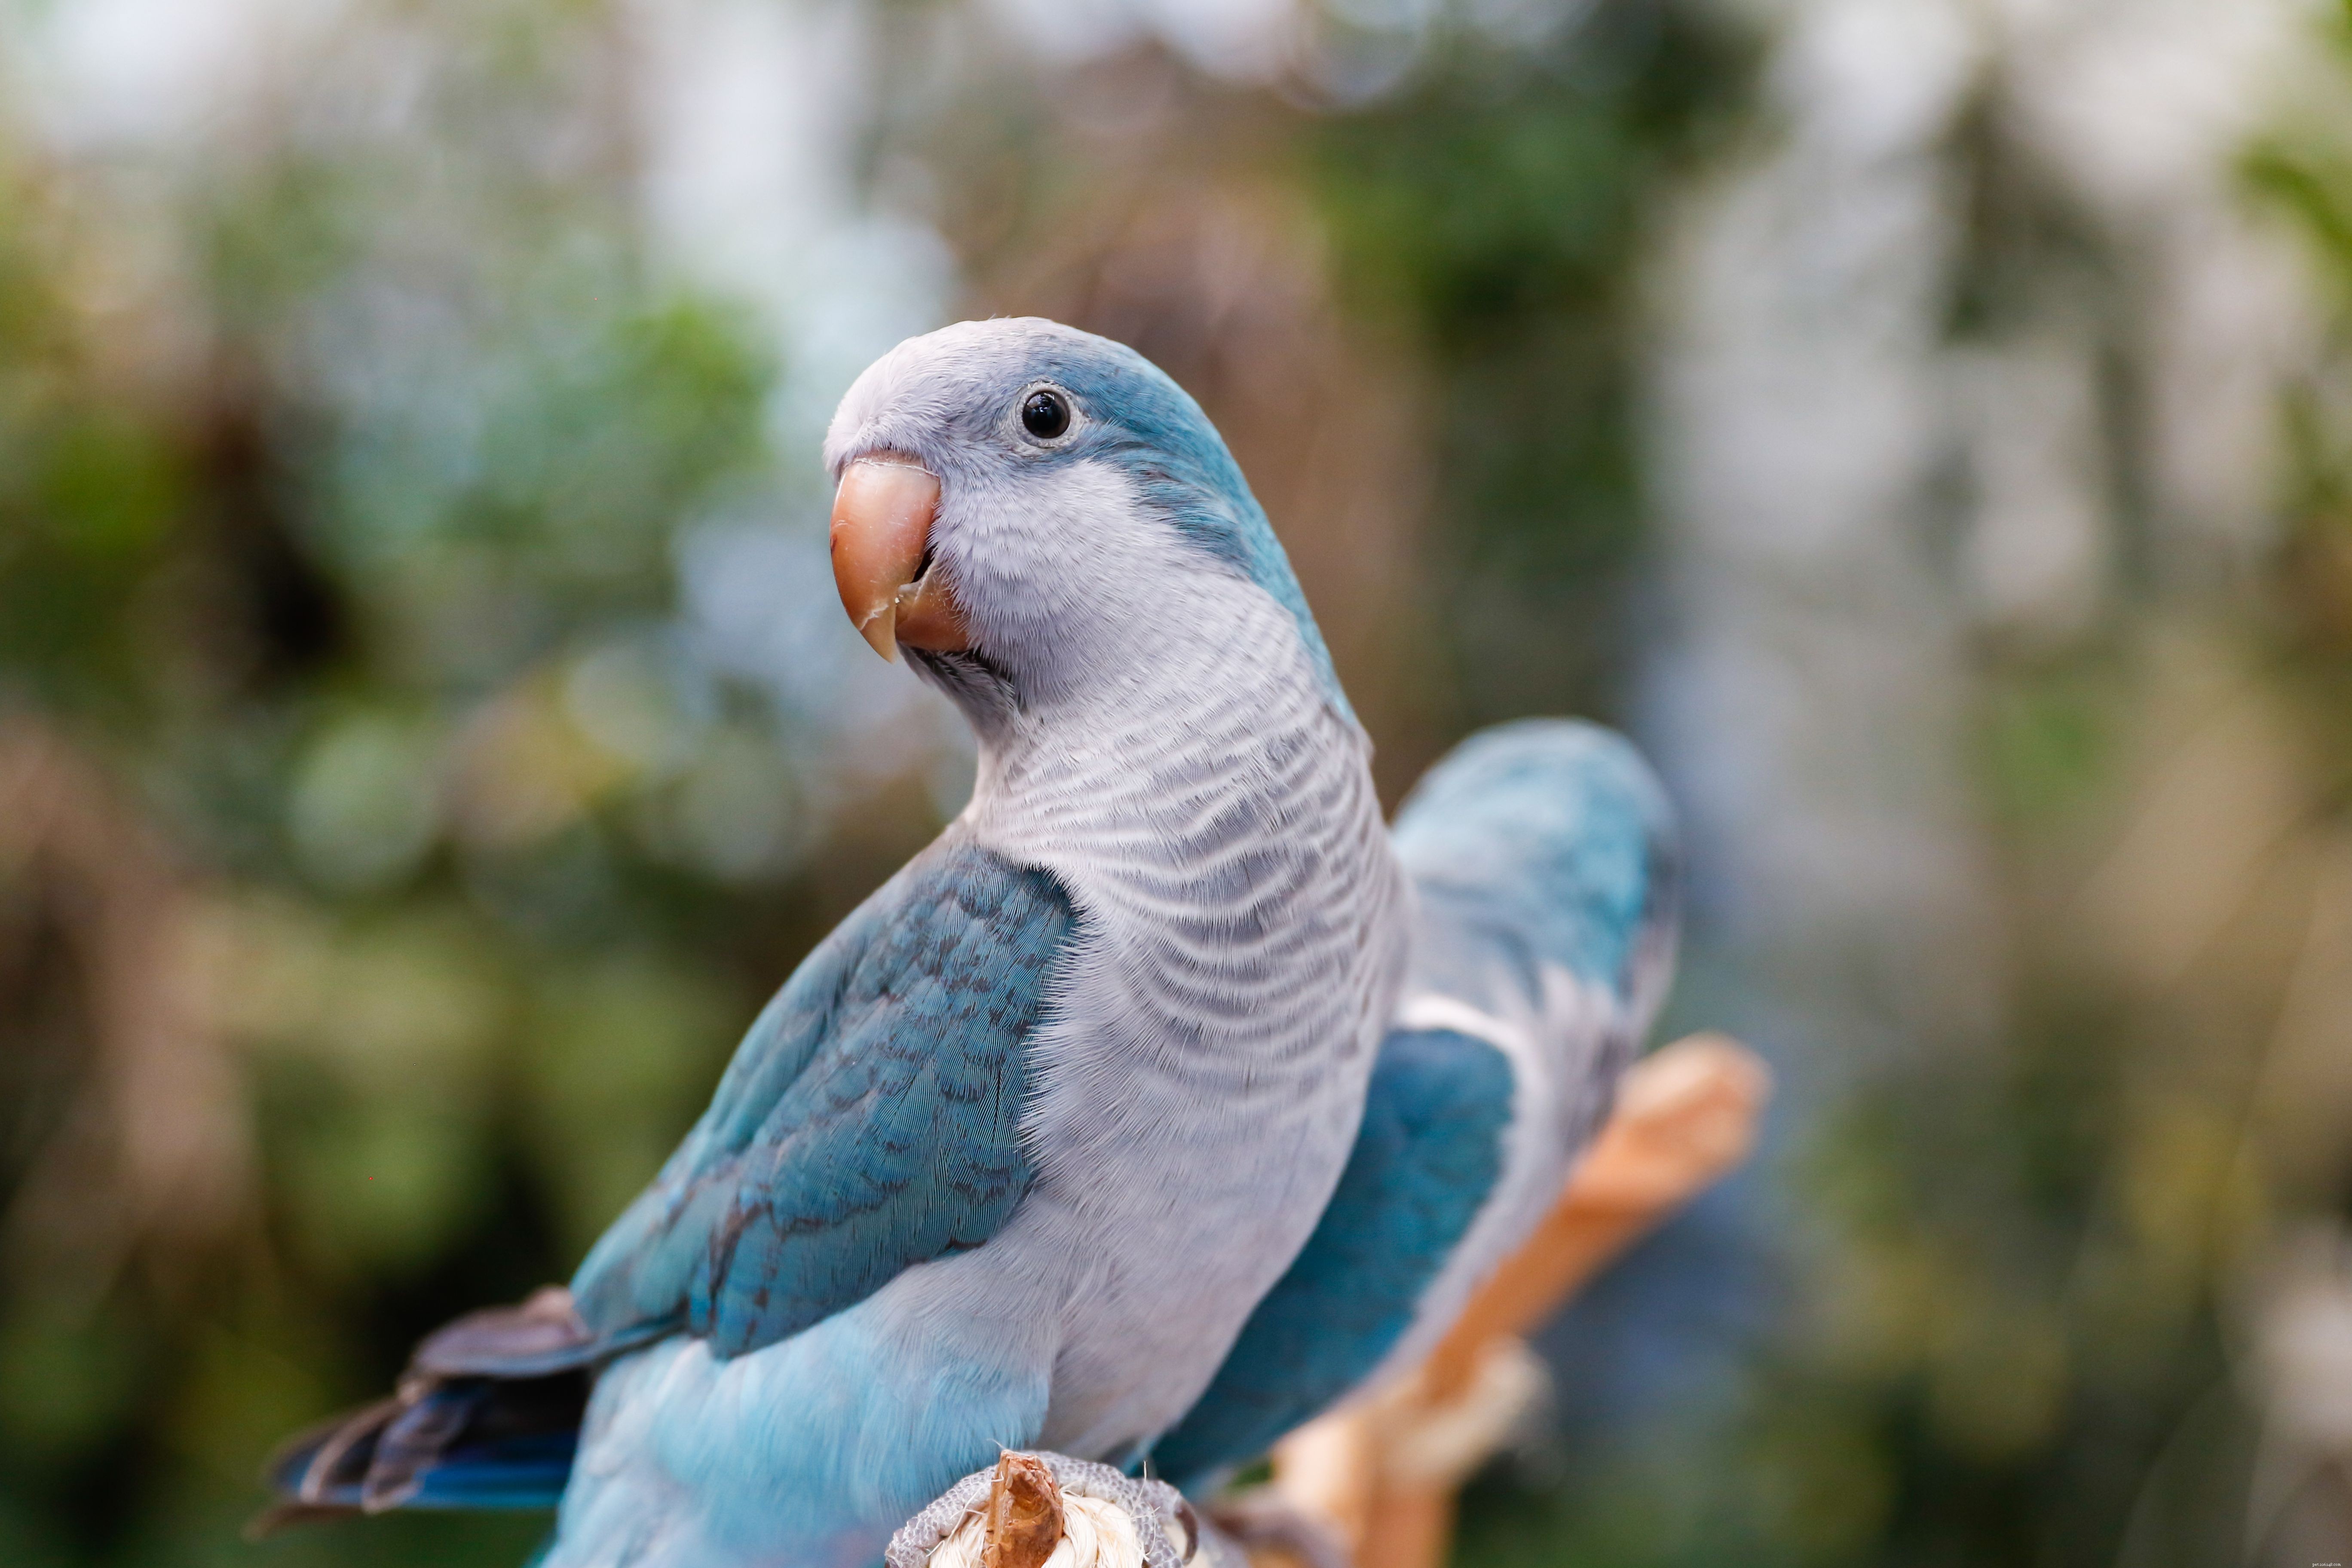 애완 동물로 키우기 좋은 푸른 앵무새 8종